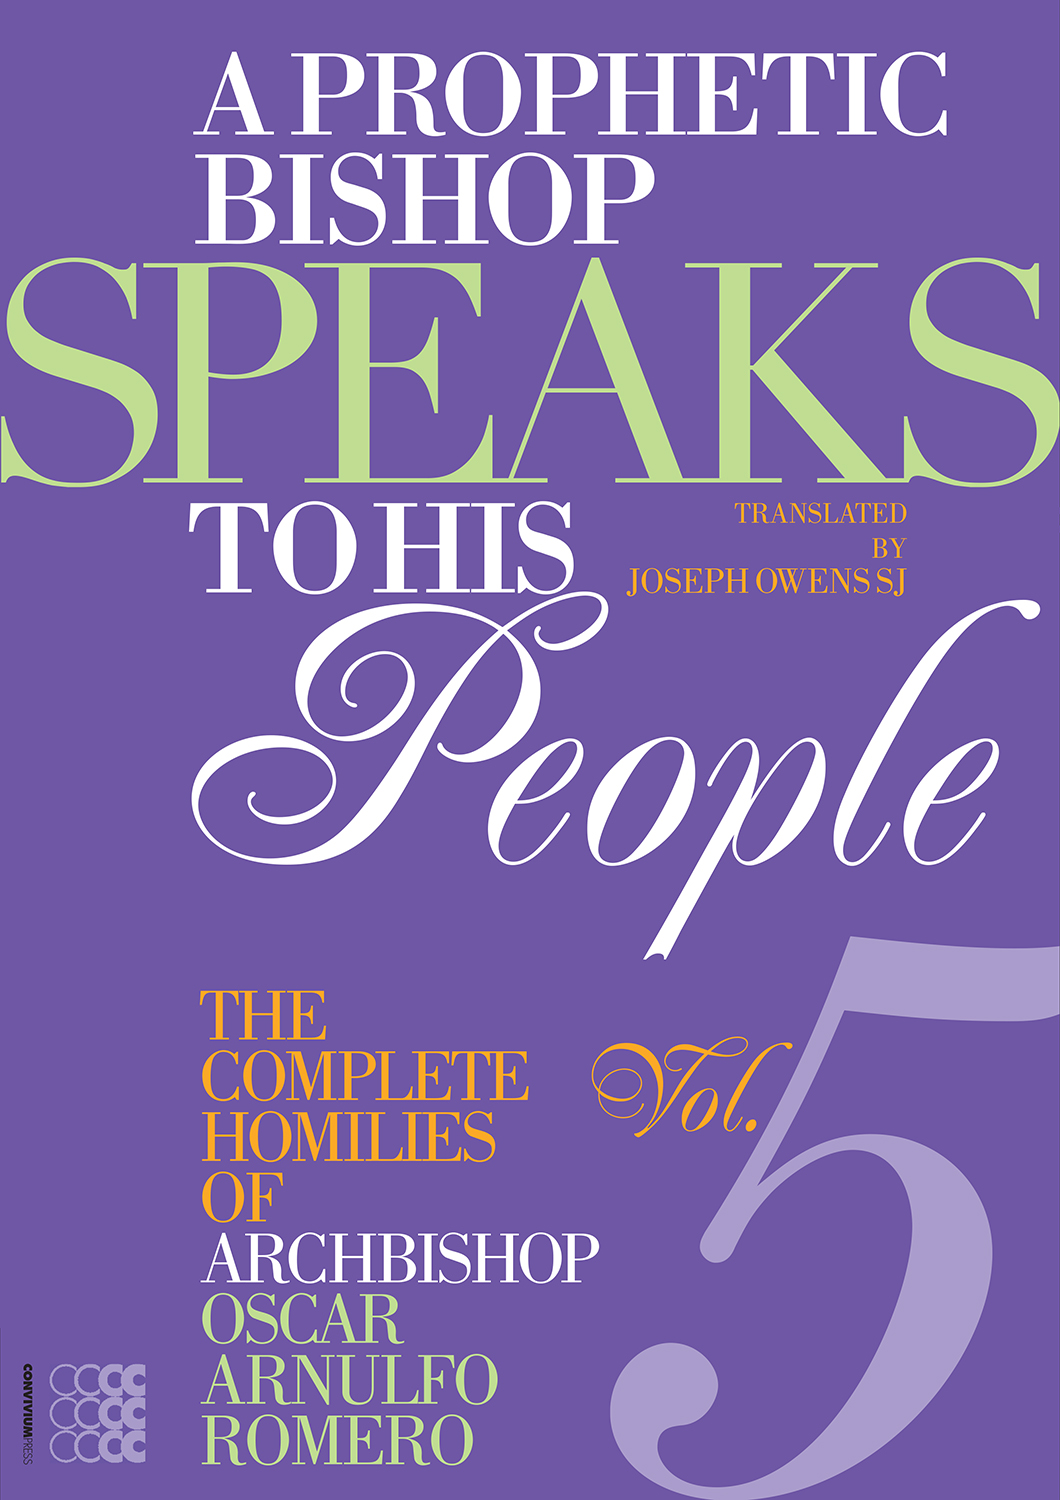 A Prophetic Bishop Speaks to his People 5